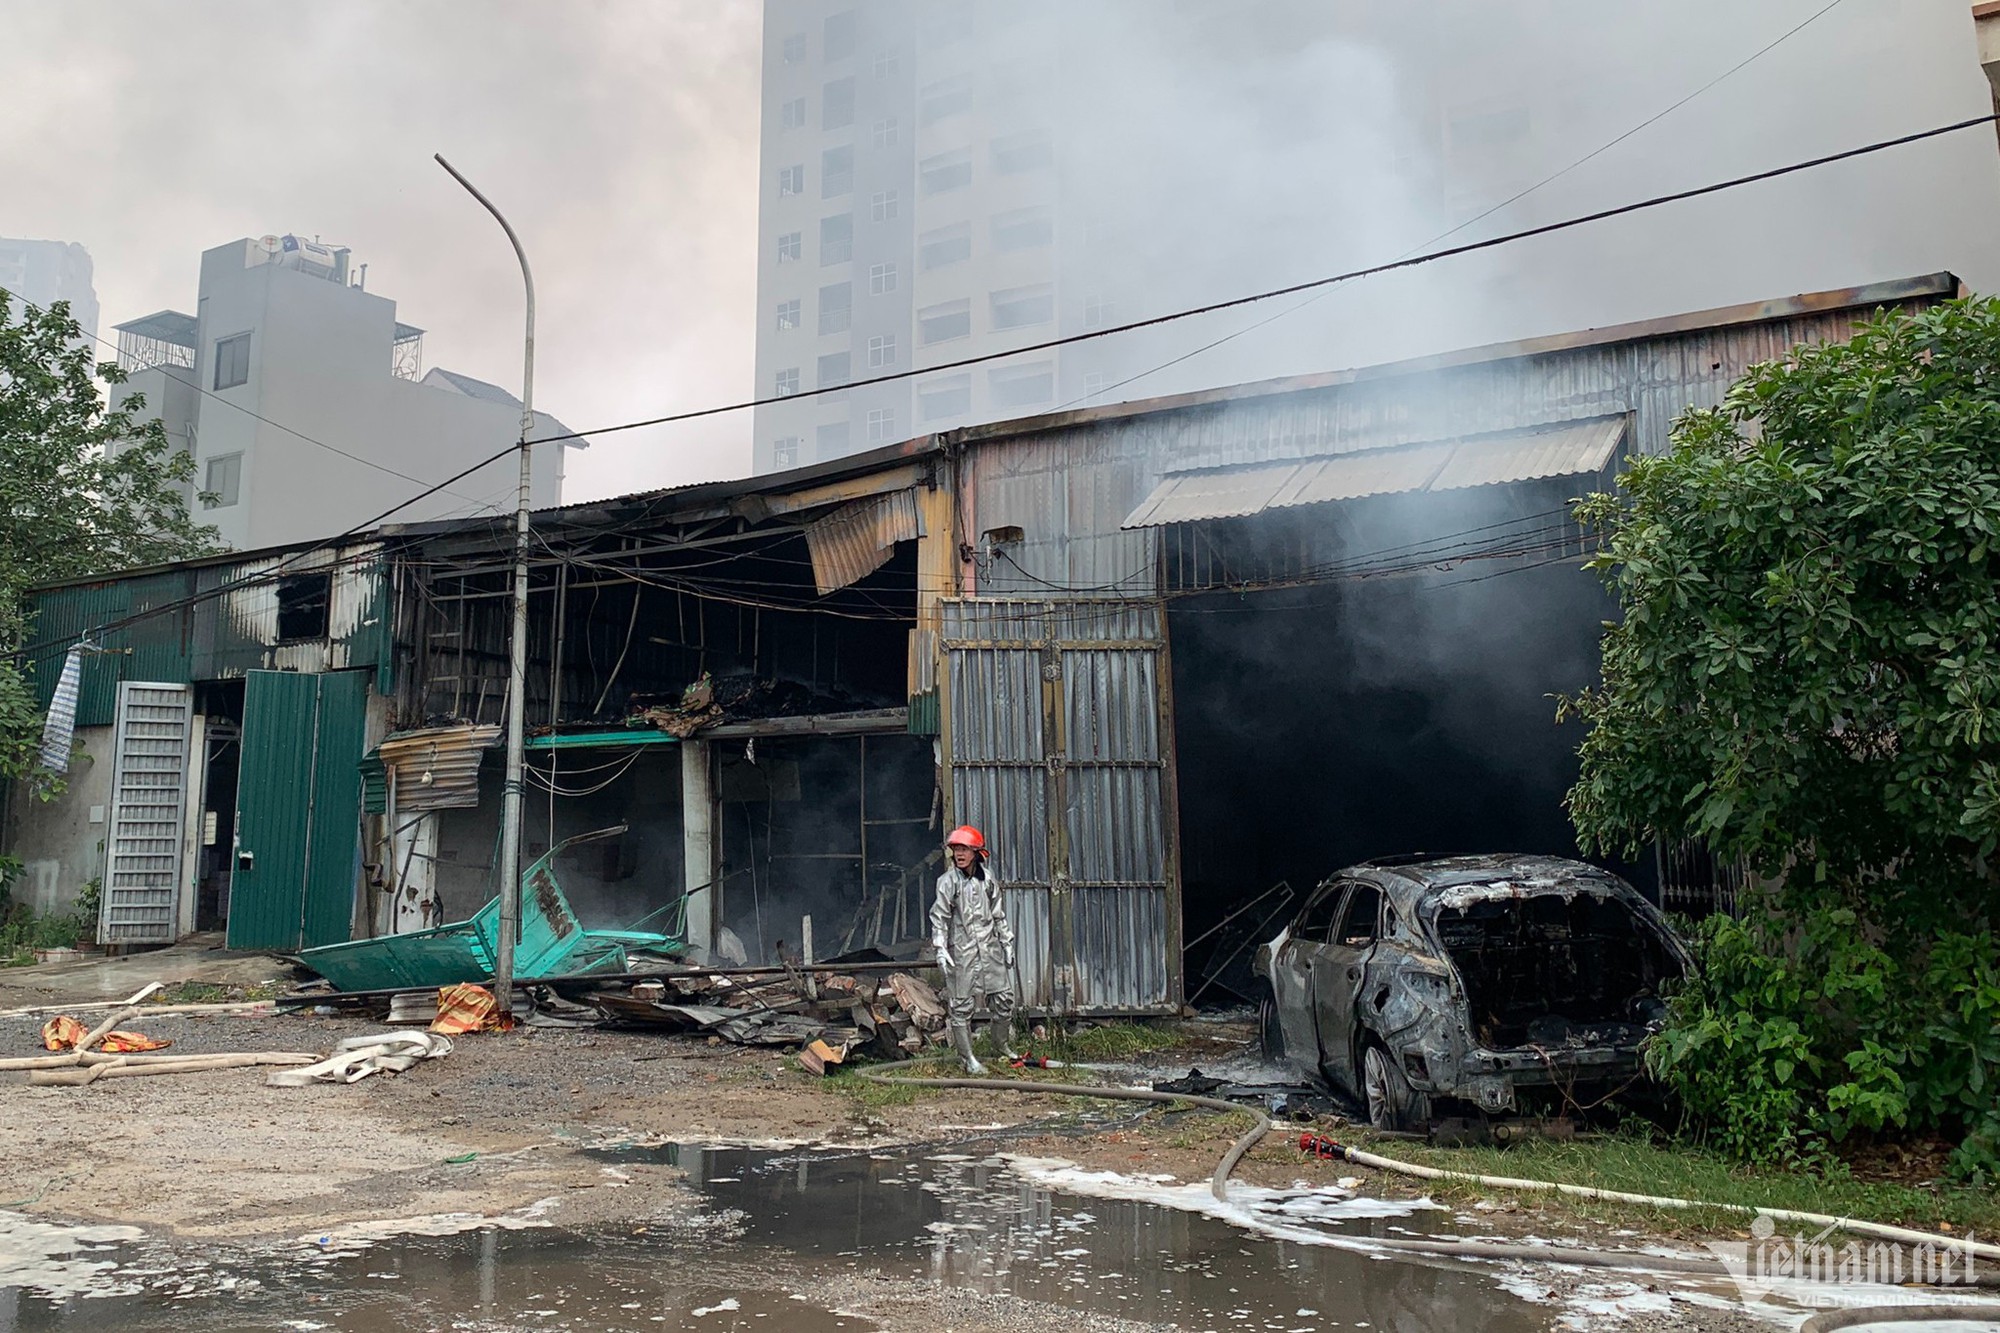 Hà Nội: Sau tiếng nổ, lửa bùng lên ngùn ngụt ở dãy kho xưởng khu Đền Lừ - Ảnh 8.